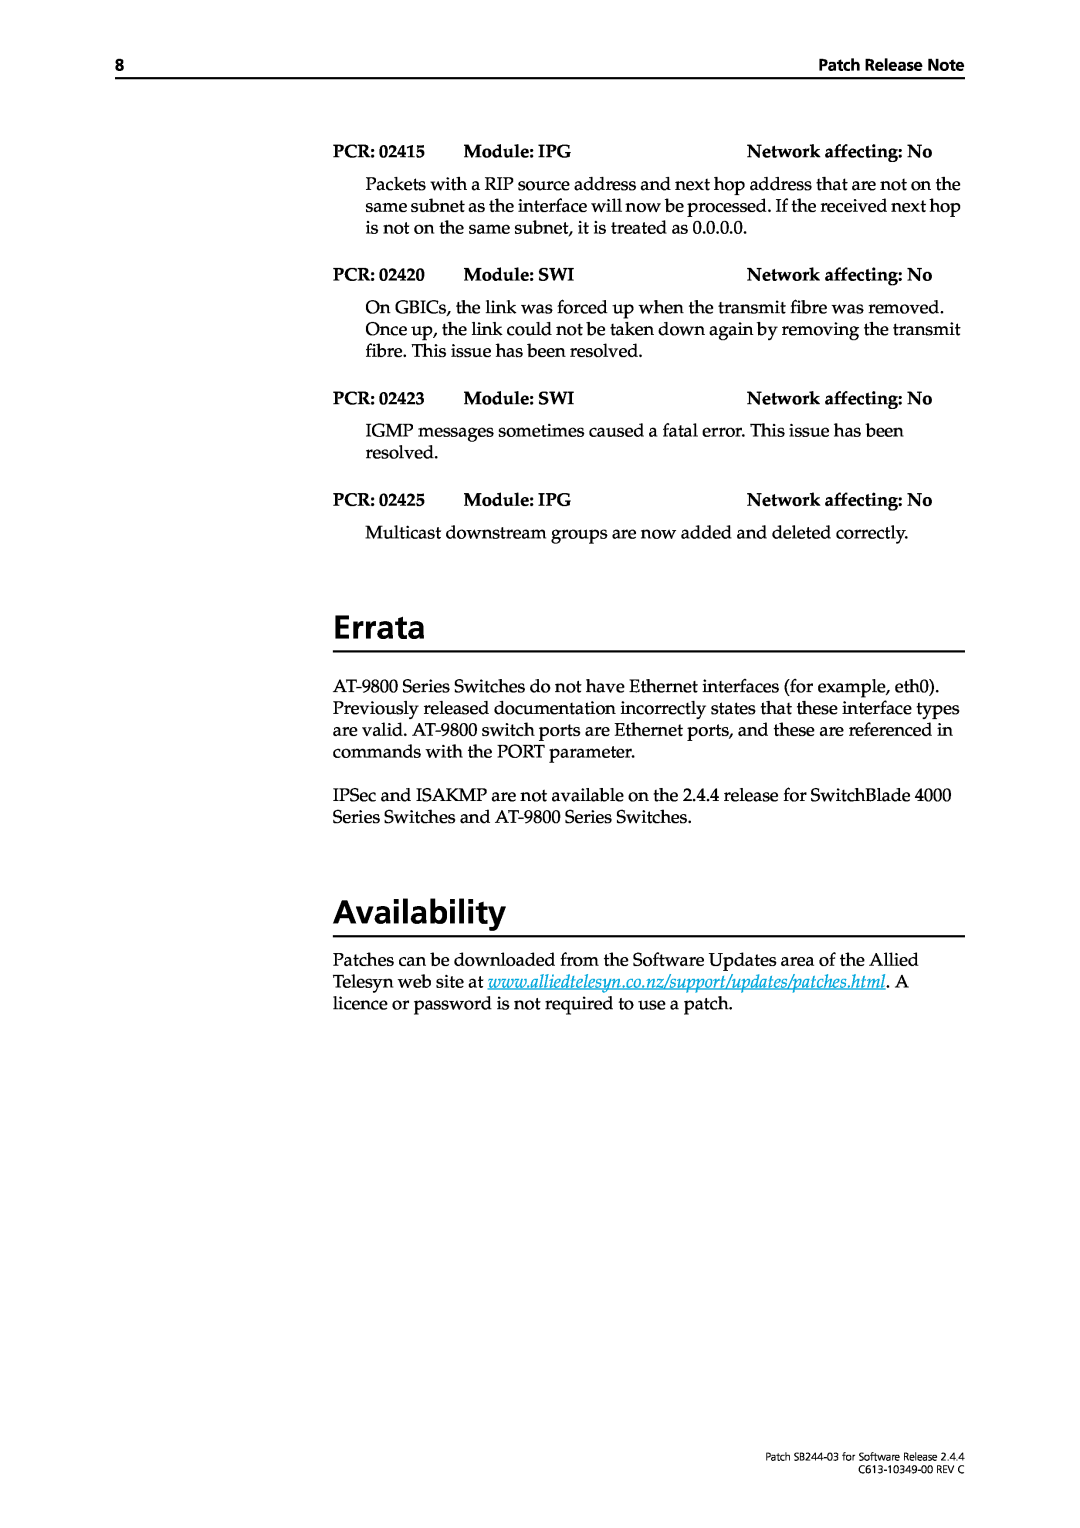 Allied Telesis SB244-03 manual Errata, Availability 